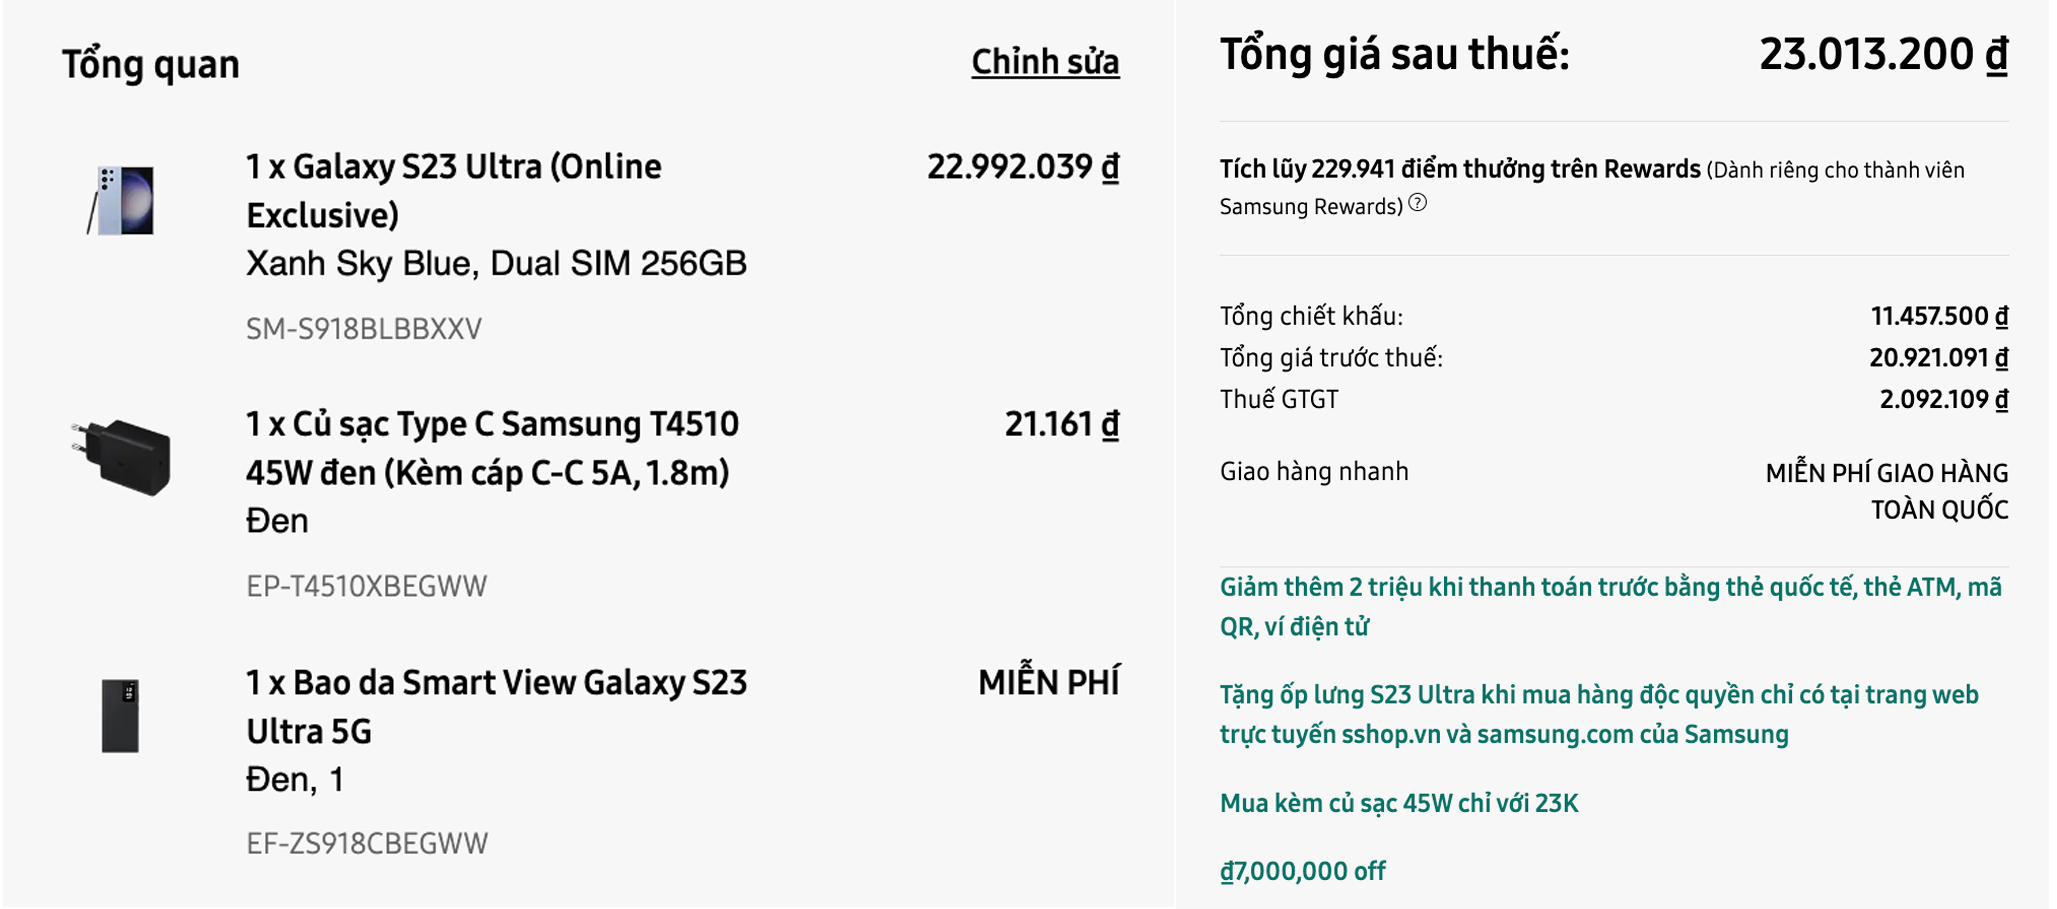 Cách mua Galaxy S23 Ultra với giá 23.000.000đ tại Shop Samsung - 1675918435